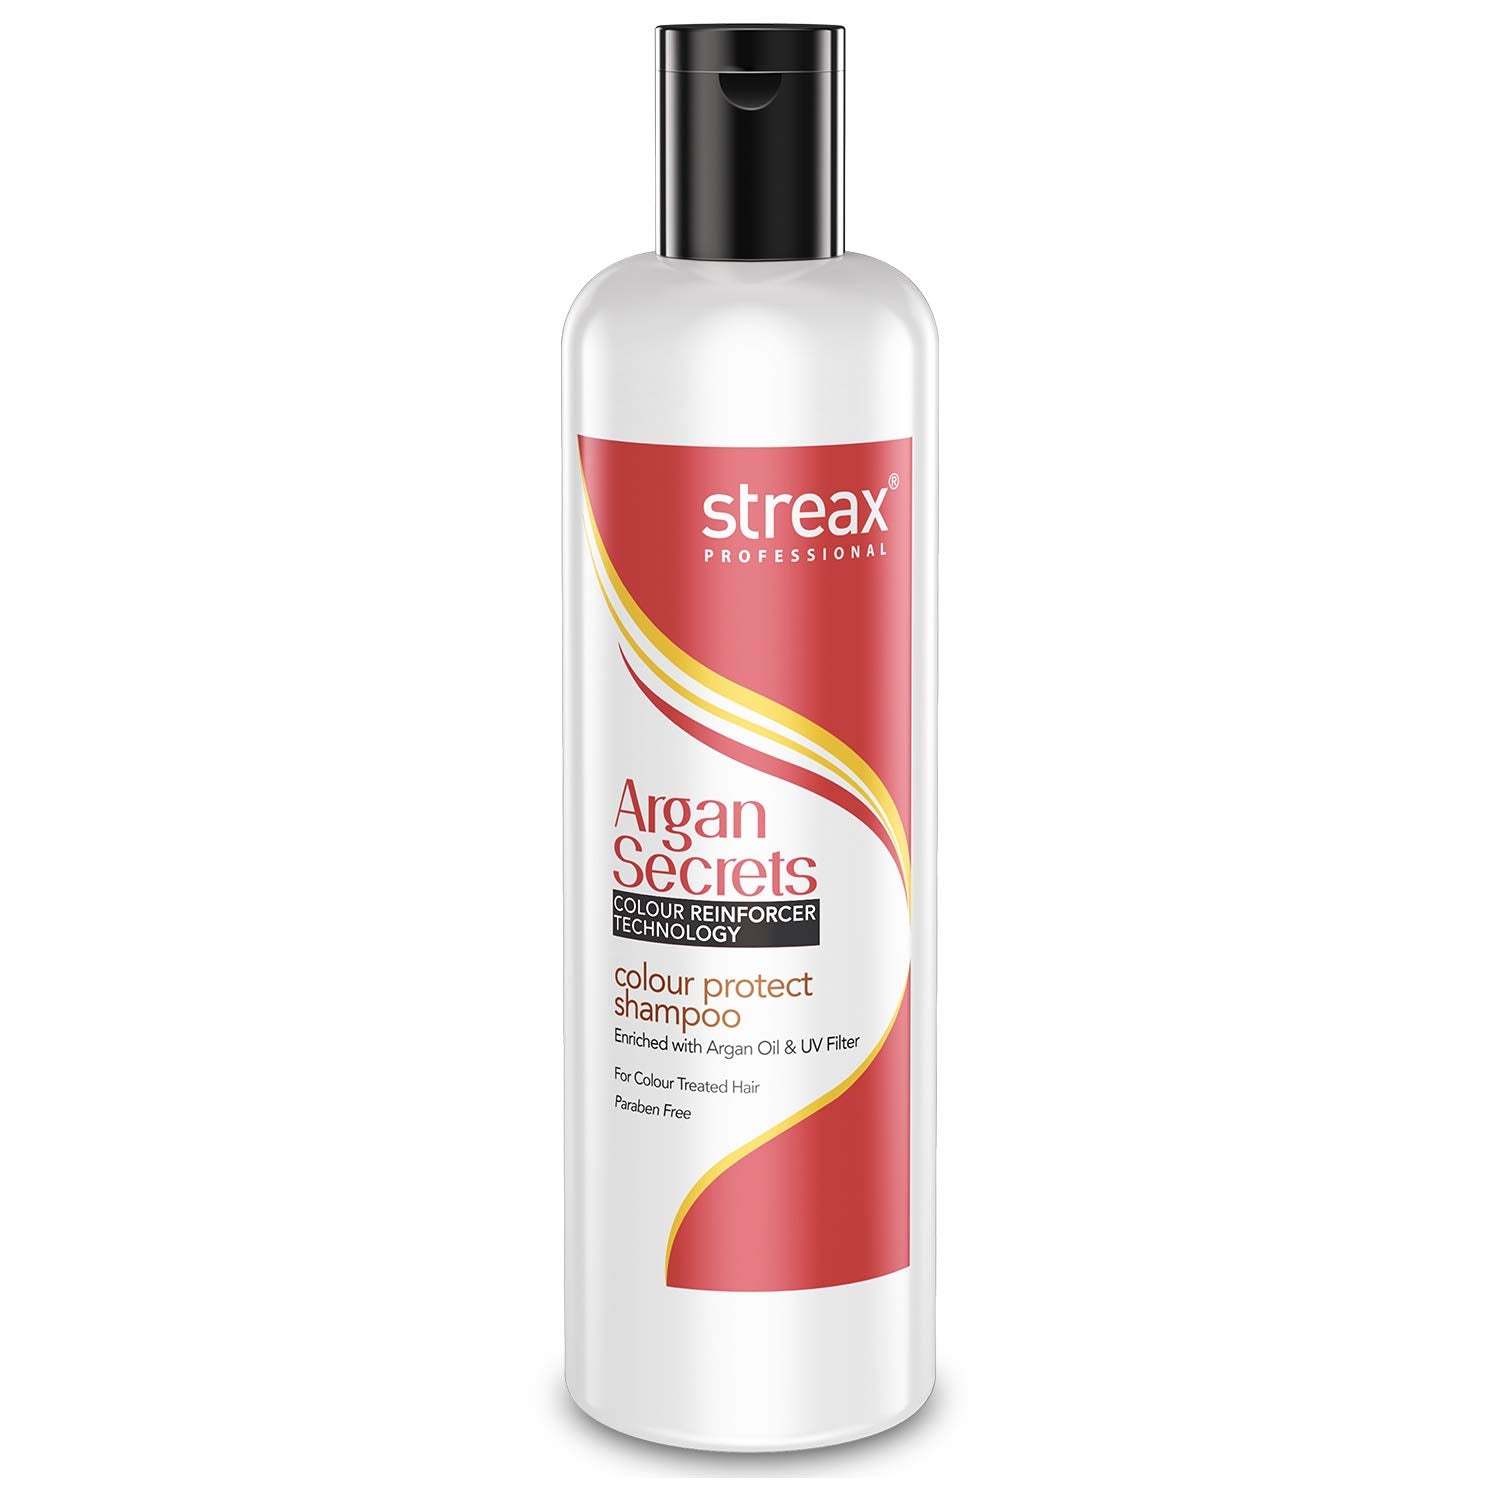 Streax Argan Secrets Color Protect Shampoo